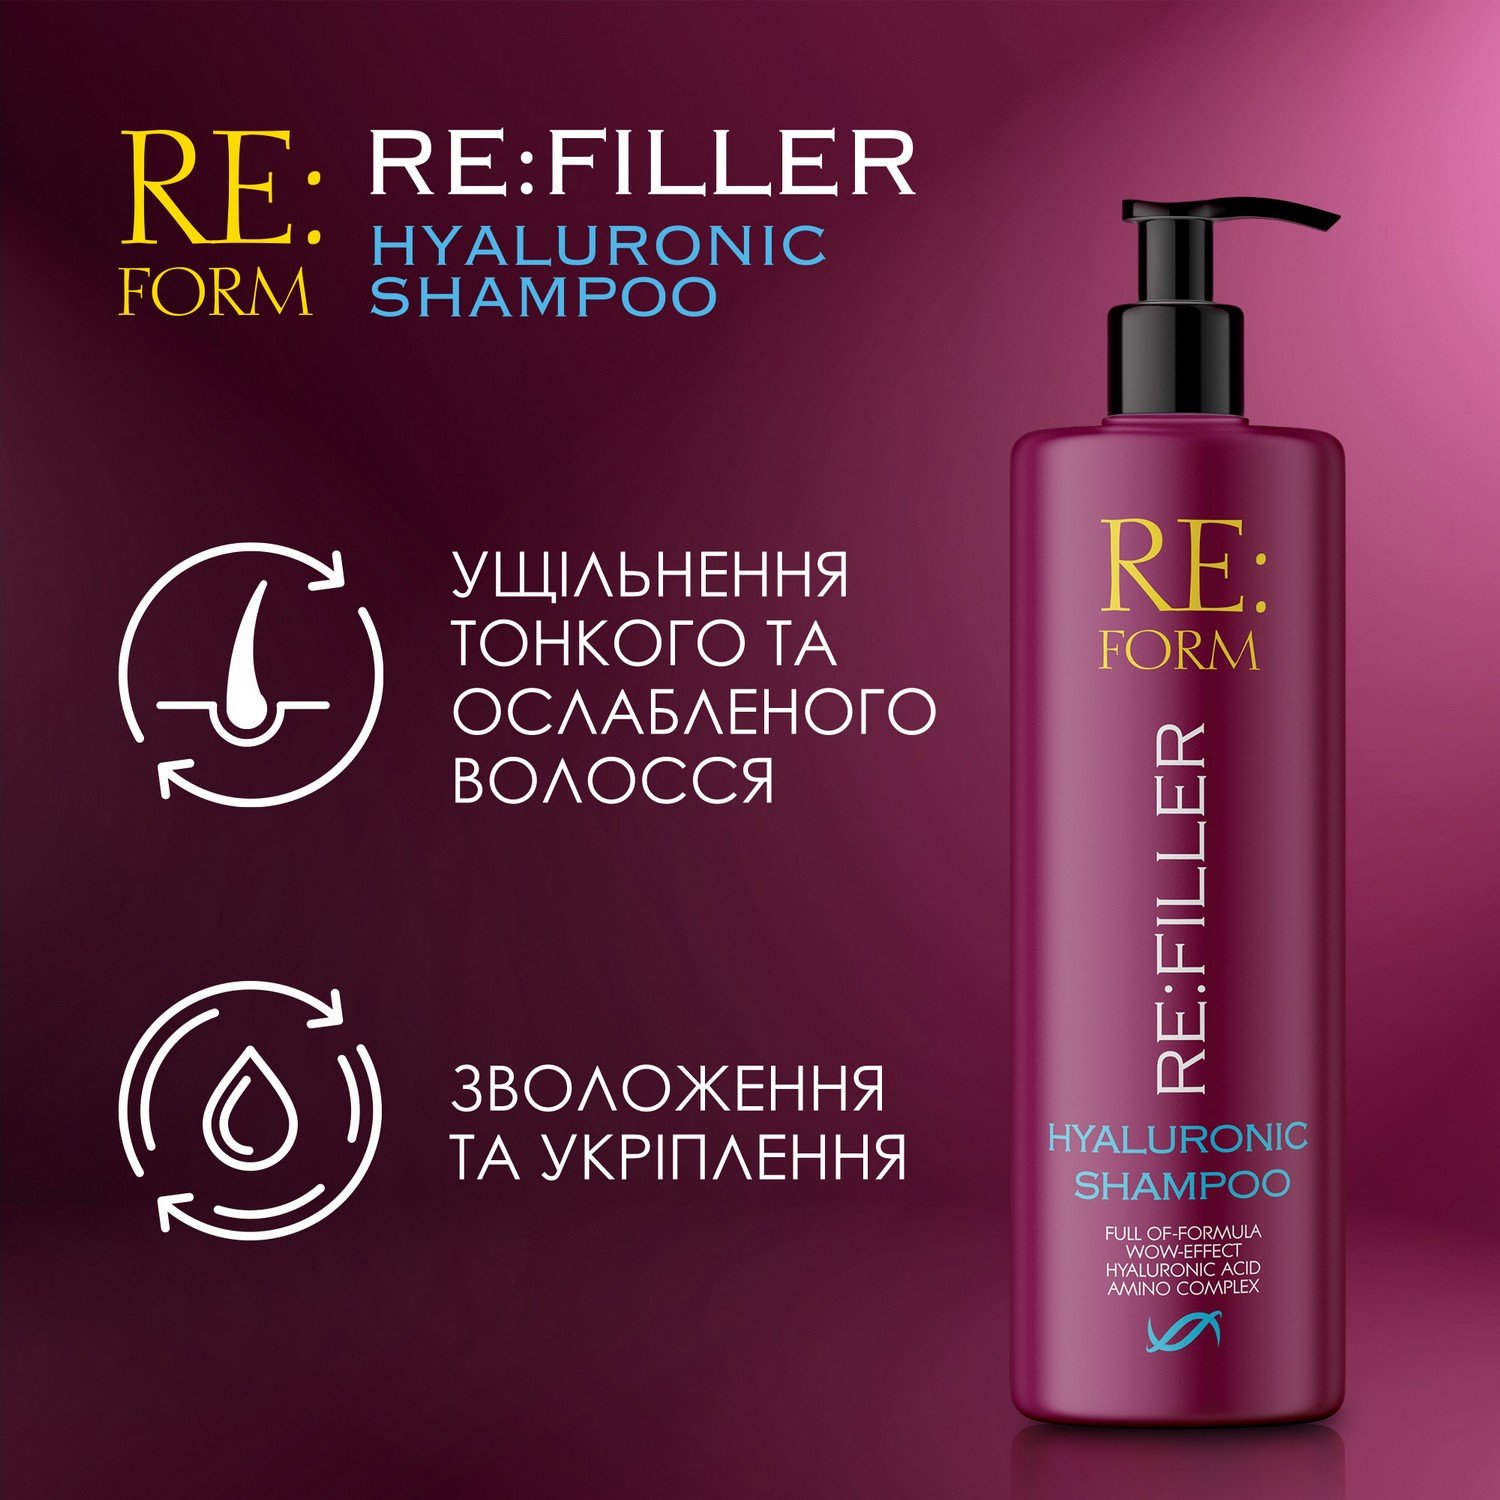 Гиалуроновый шампунь Re:form Re:filler Объем и увлажнение волос, 400 мл - фото 3